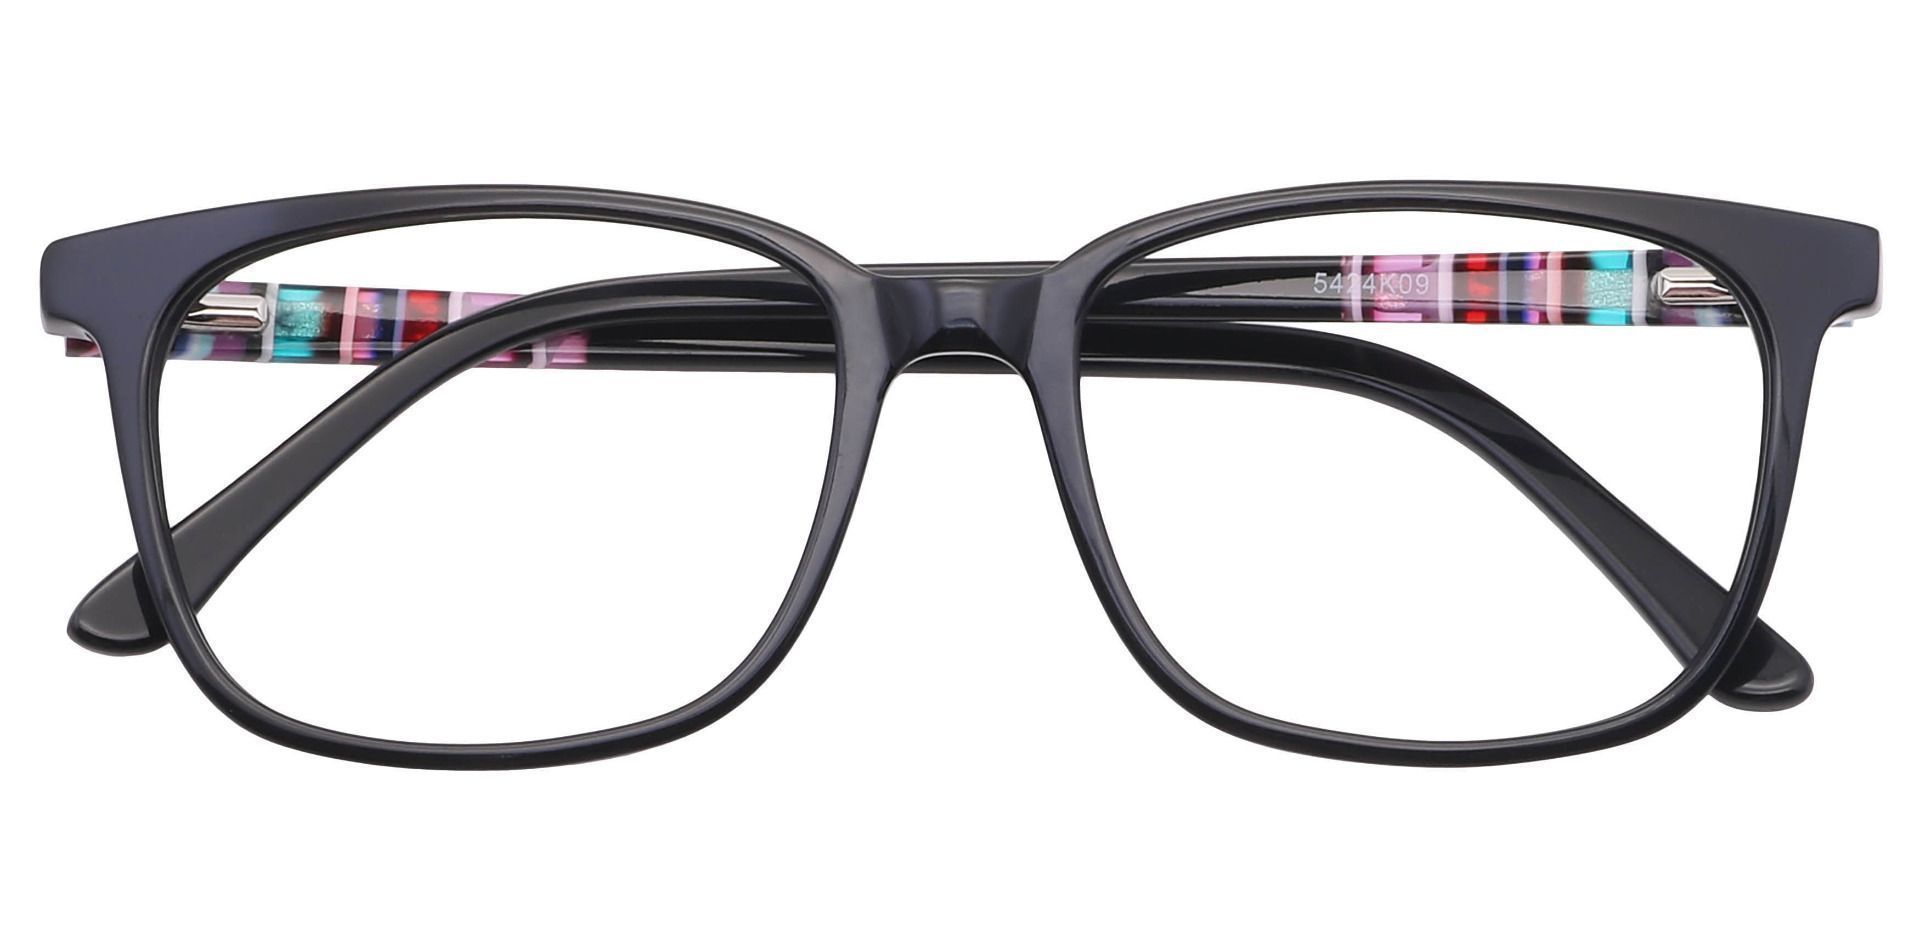 Fern Square Prescription Glasses - Black